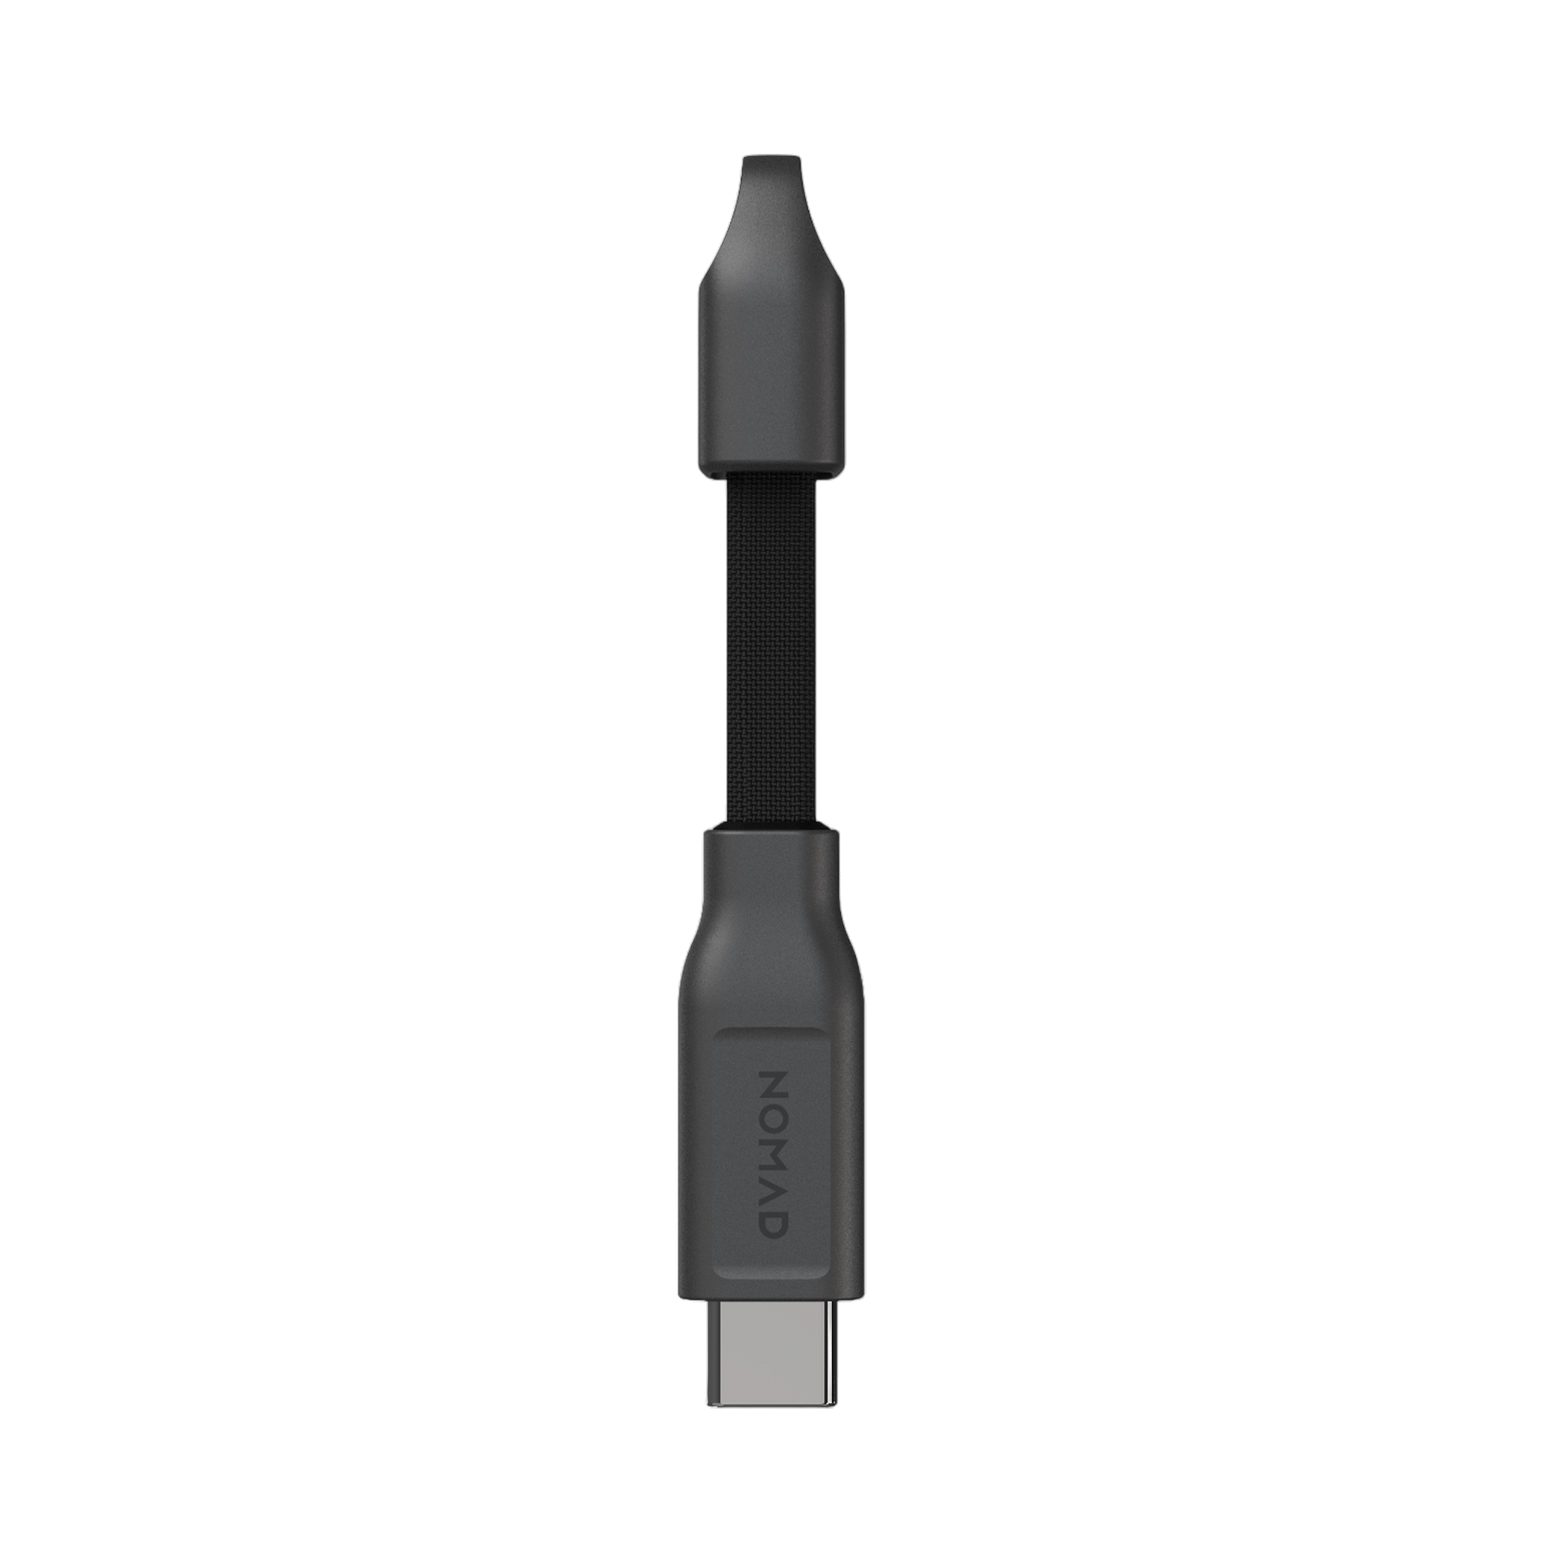 Nomad USB-C ChargeKey